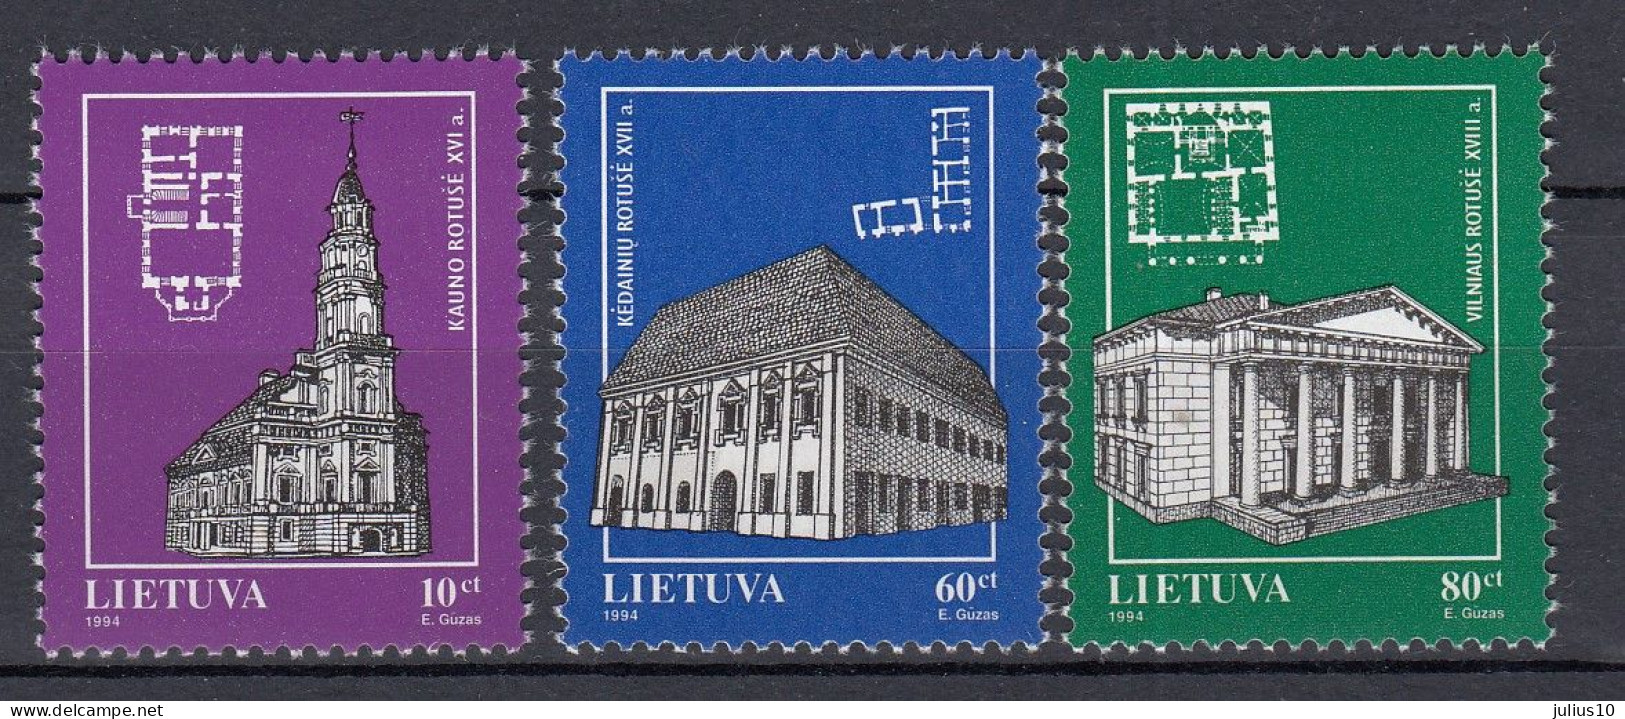 LITHUANIA 1994 Churches MNH(**) Mi 568-570 #Lt1143 - Litauen